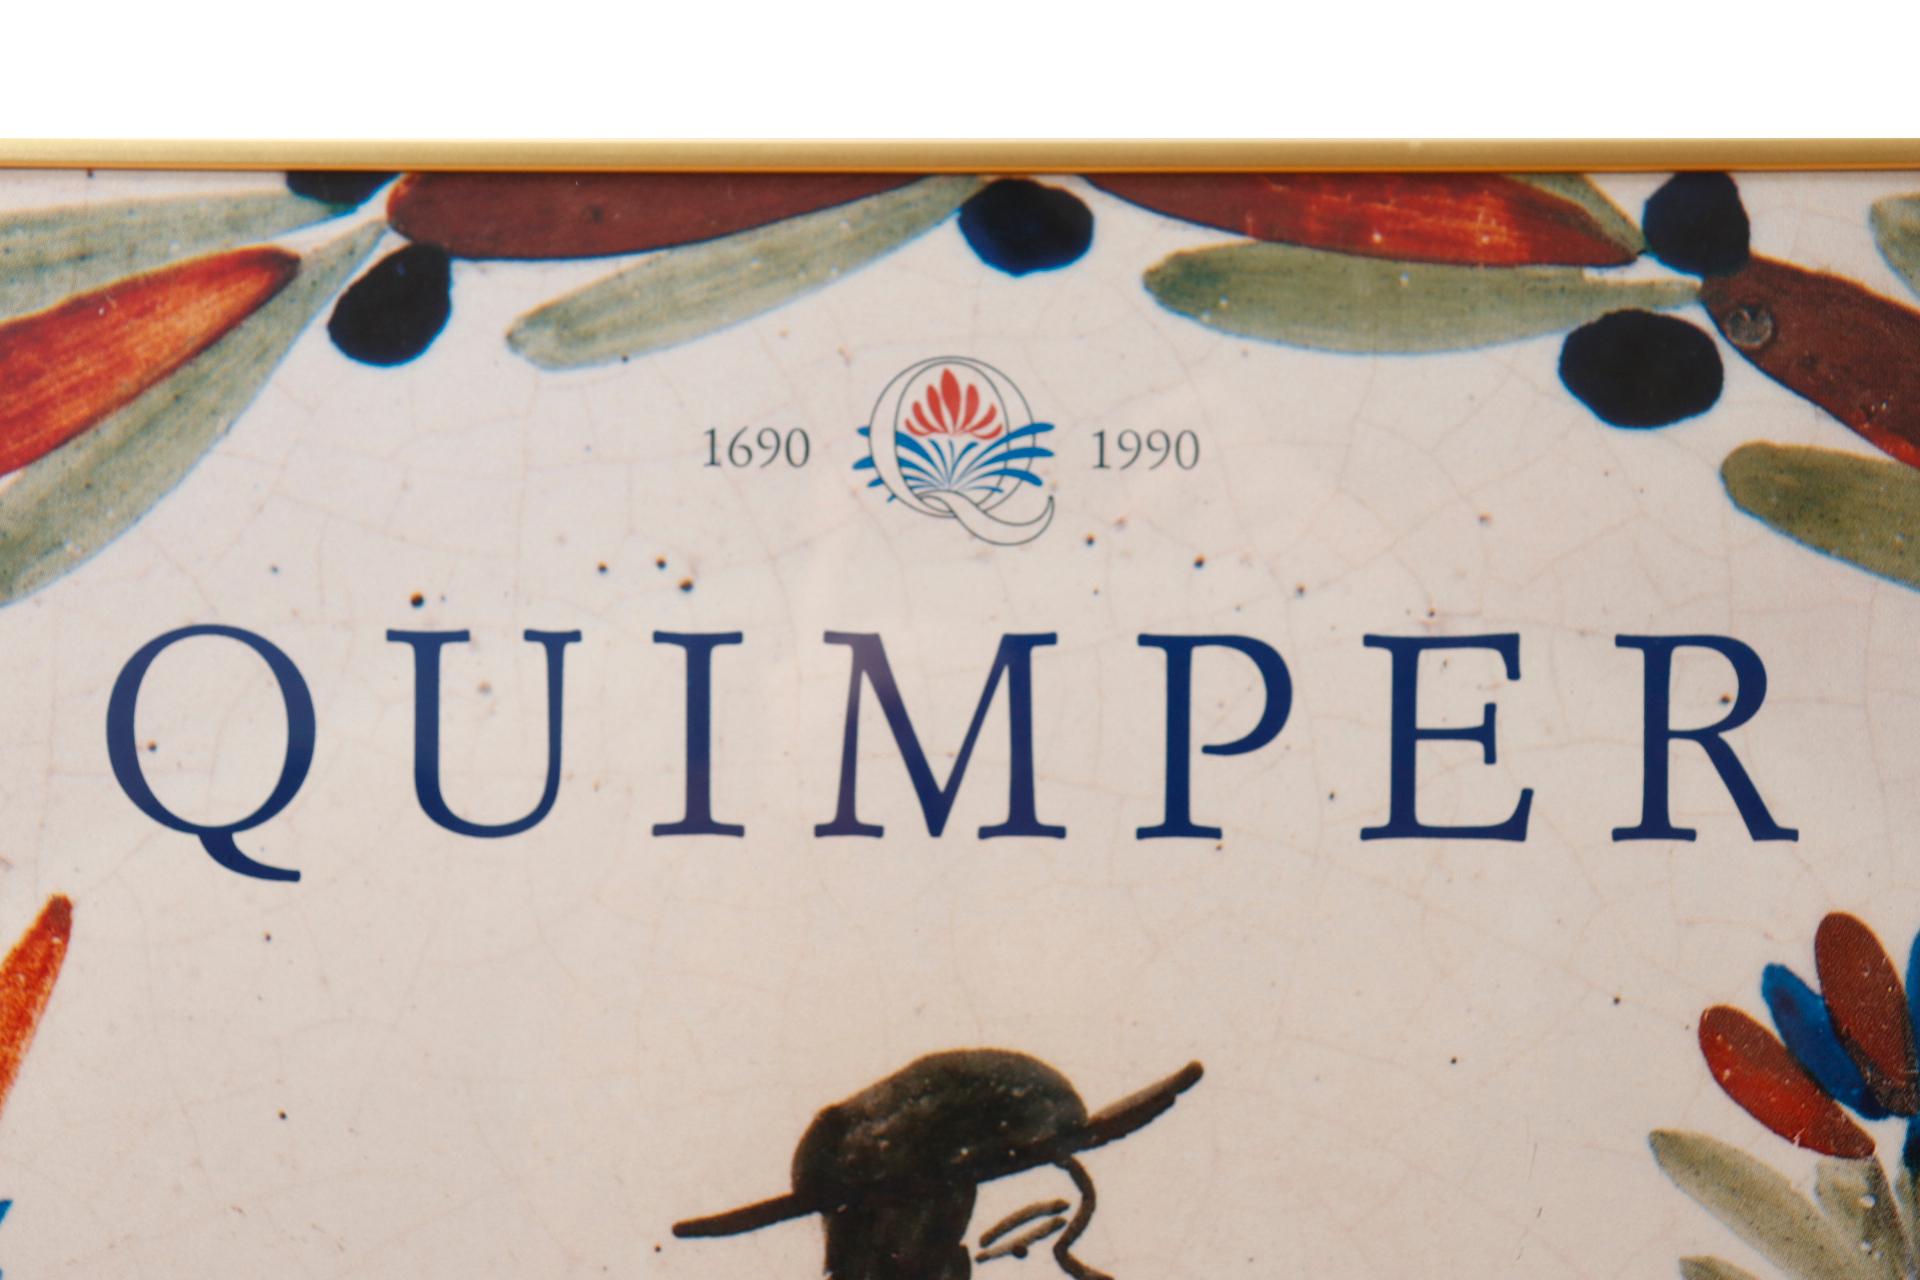 Affiche lithographique encadrée faisant la promotion d'une exposition au Musée des Beaux-Arts célébrant trois siècles de Faïence quimpéroise, de mai à septembre 1990. L'affiche représente un paysan 